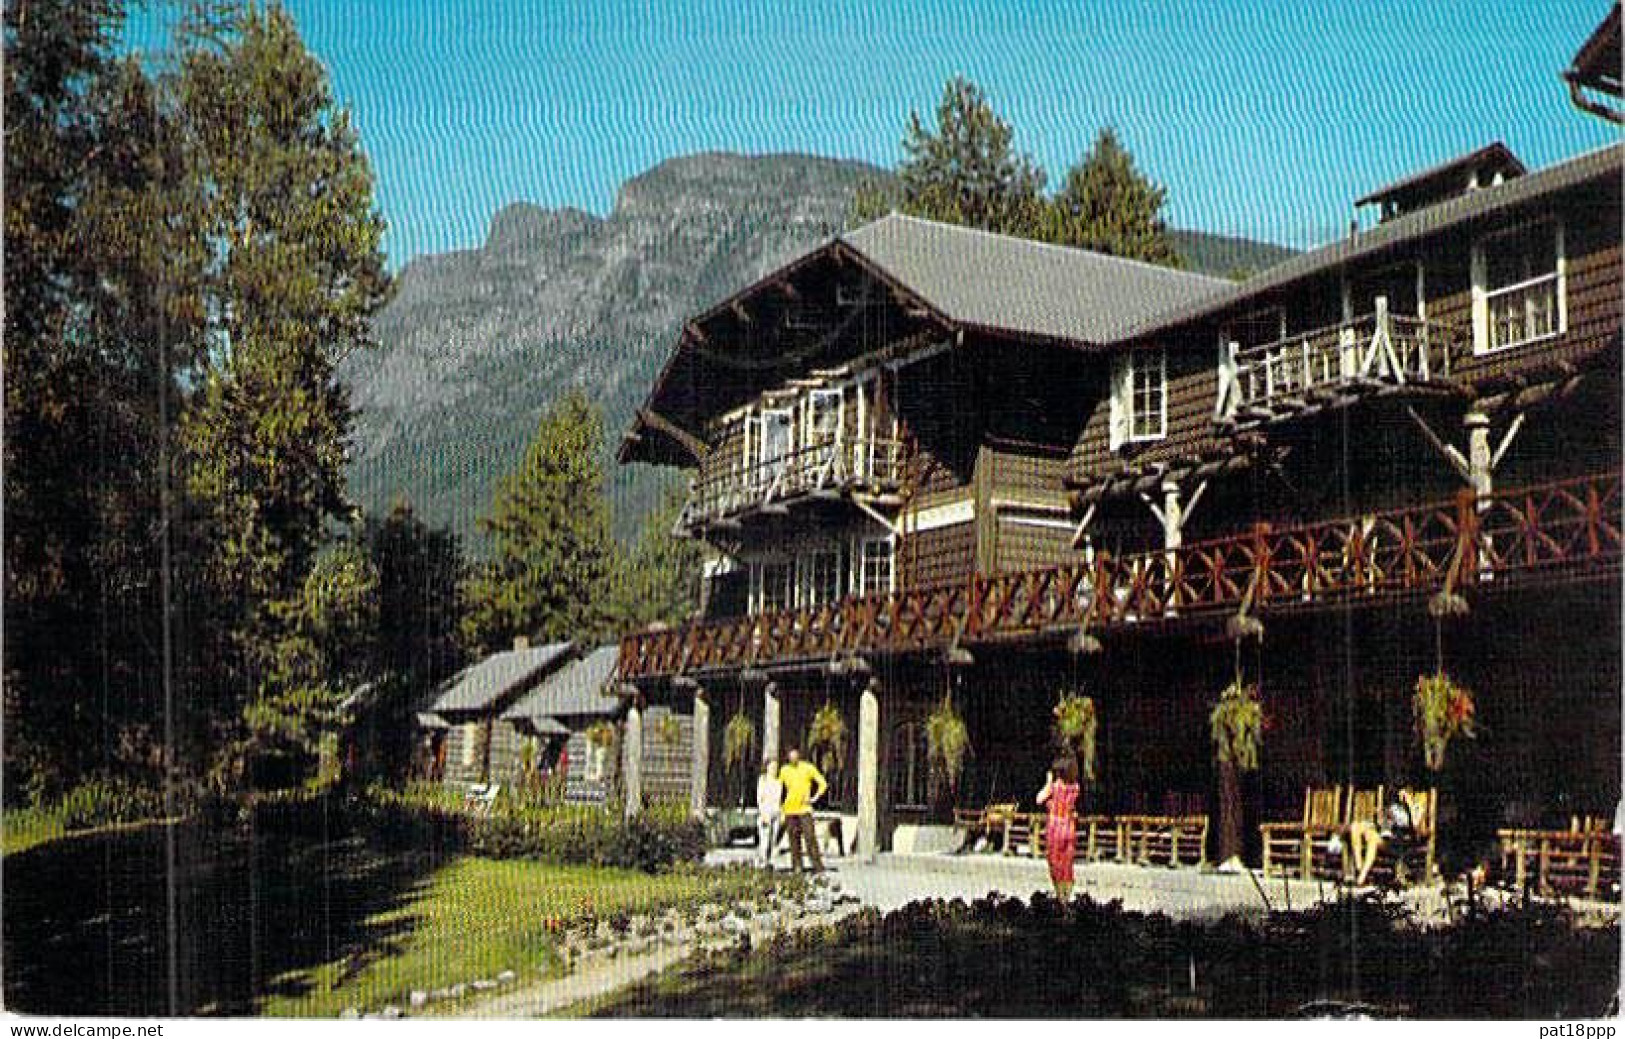 Joli Lot de 60 CPSM : MOTEL HOTEL RESTAURANT USA années1960-70 format CPA colorisées (0.15 € / carte)